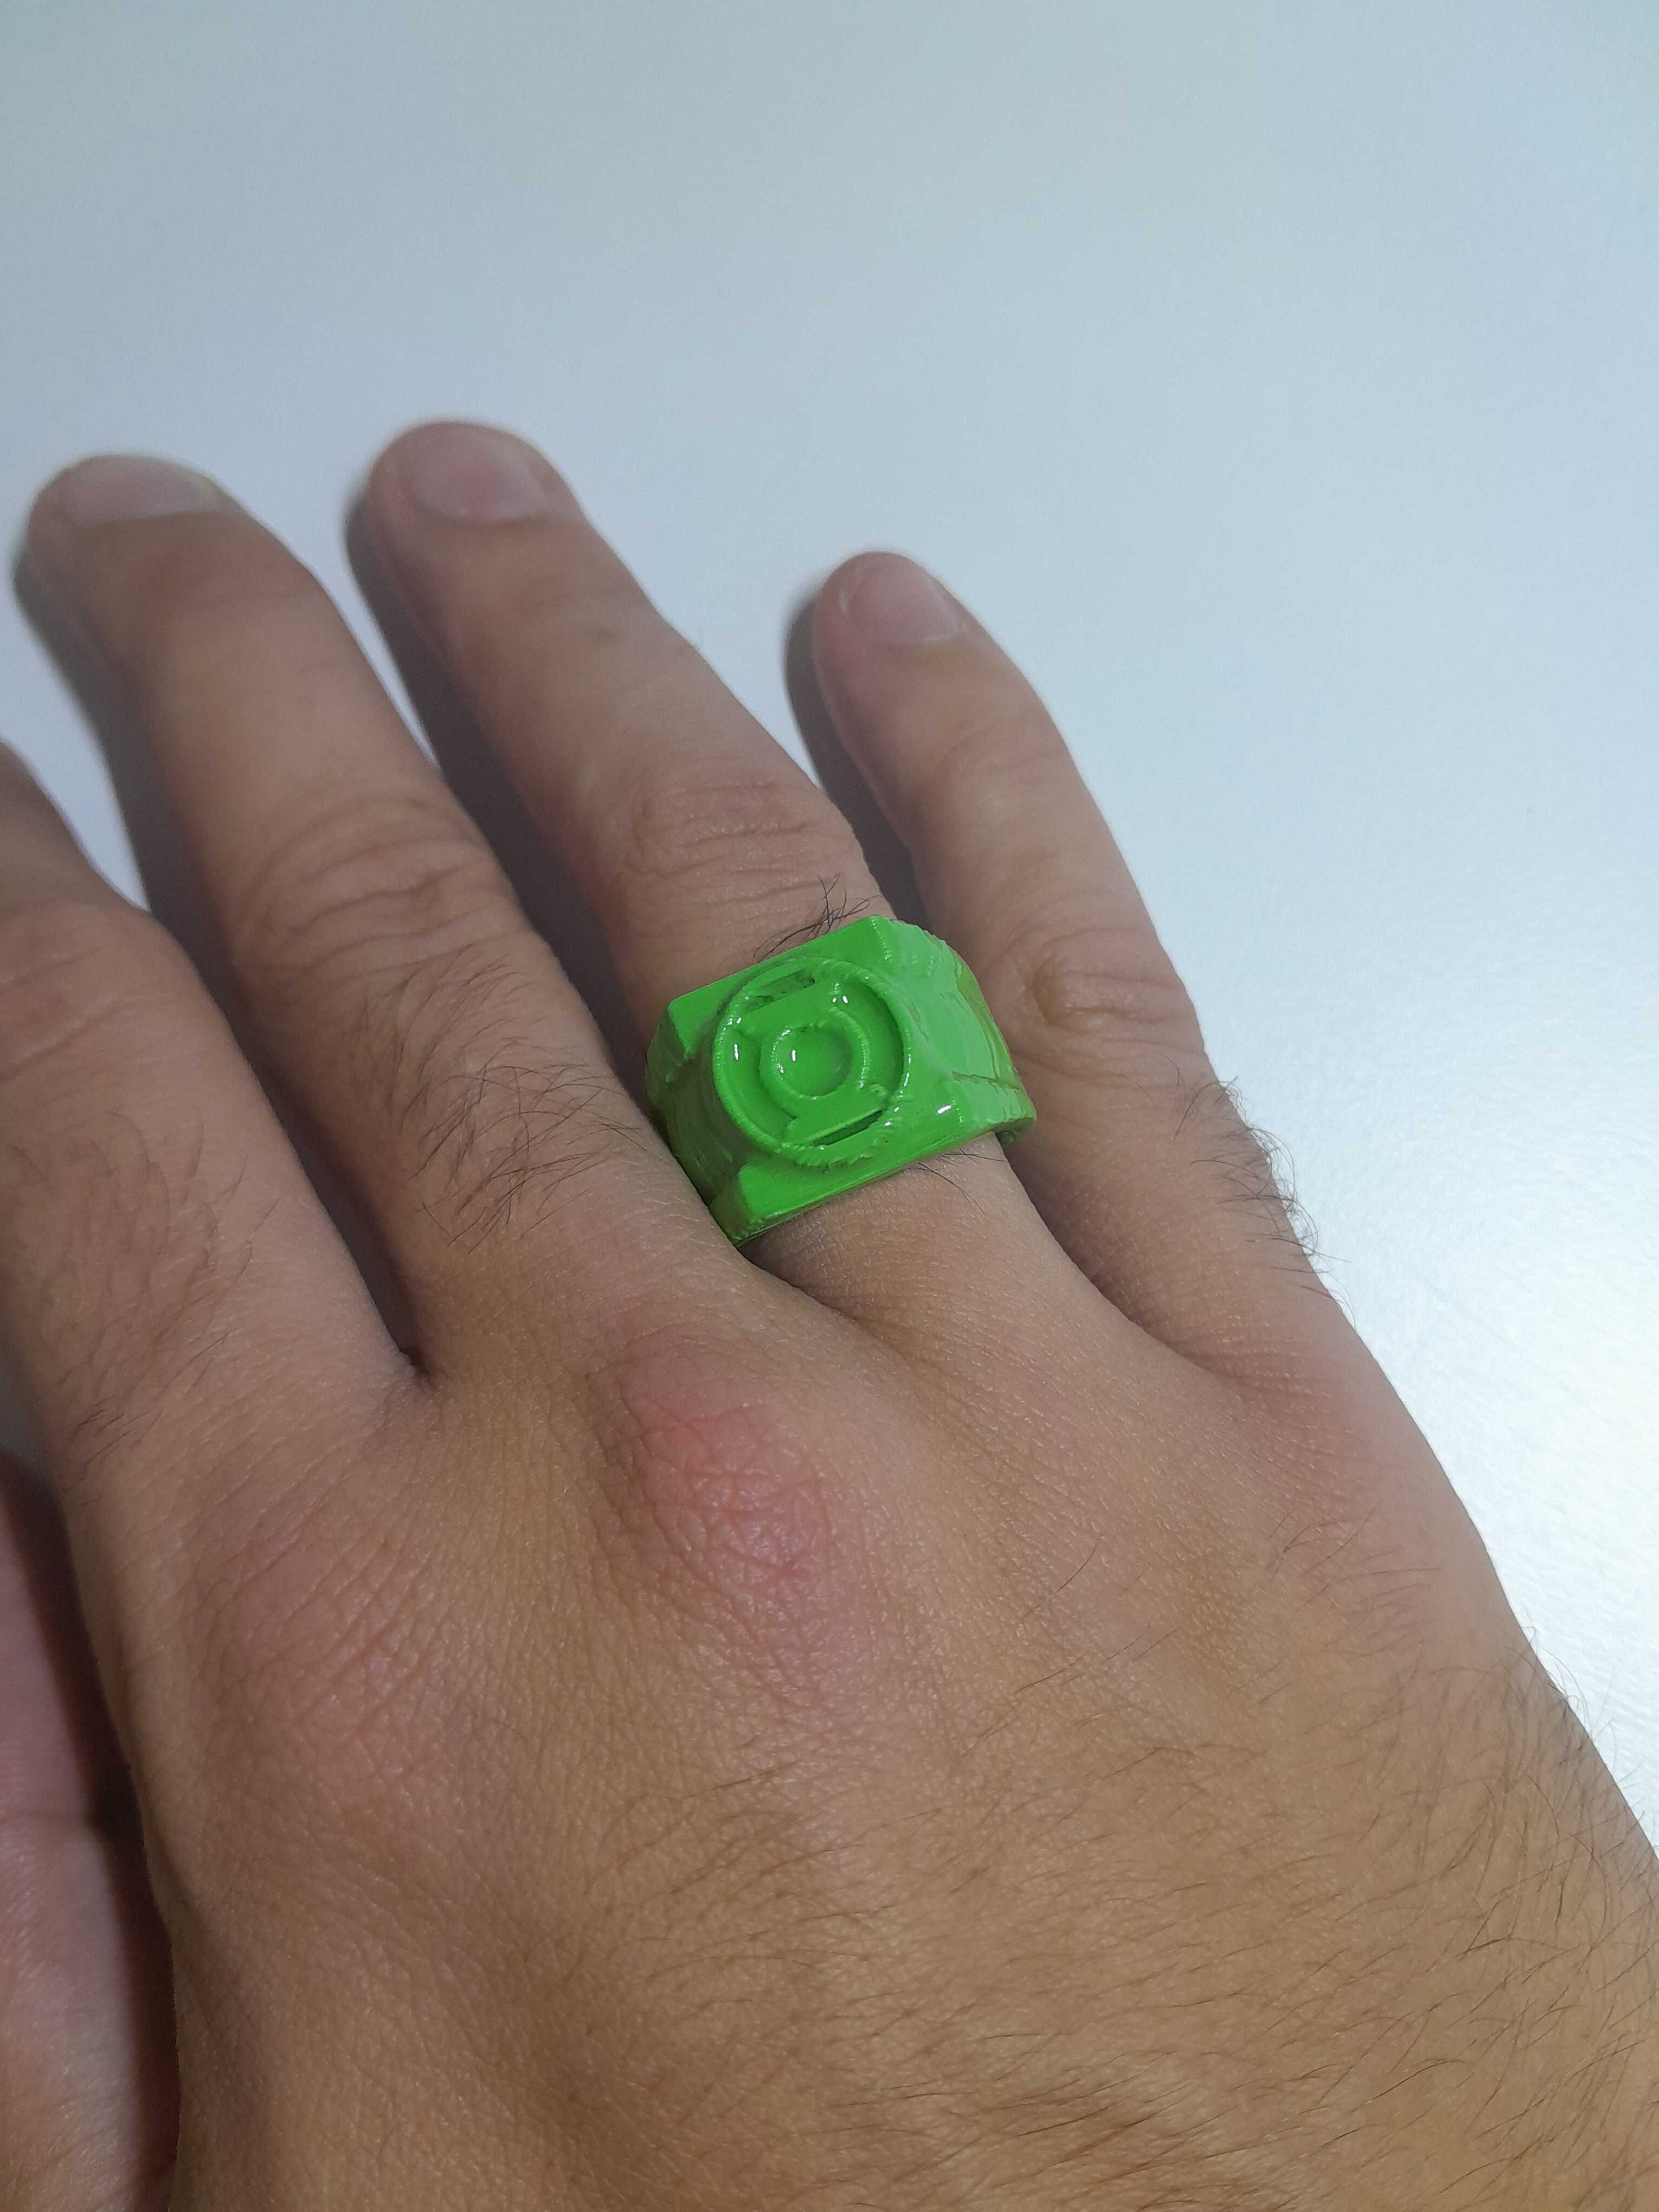 Green Lantern Ring - DC (Anel do Lanterna Verde)